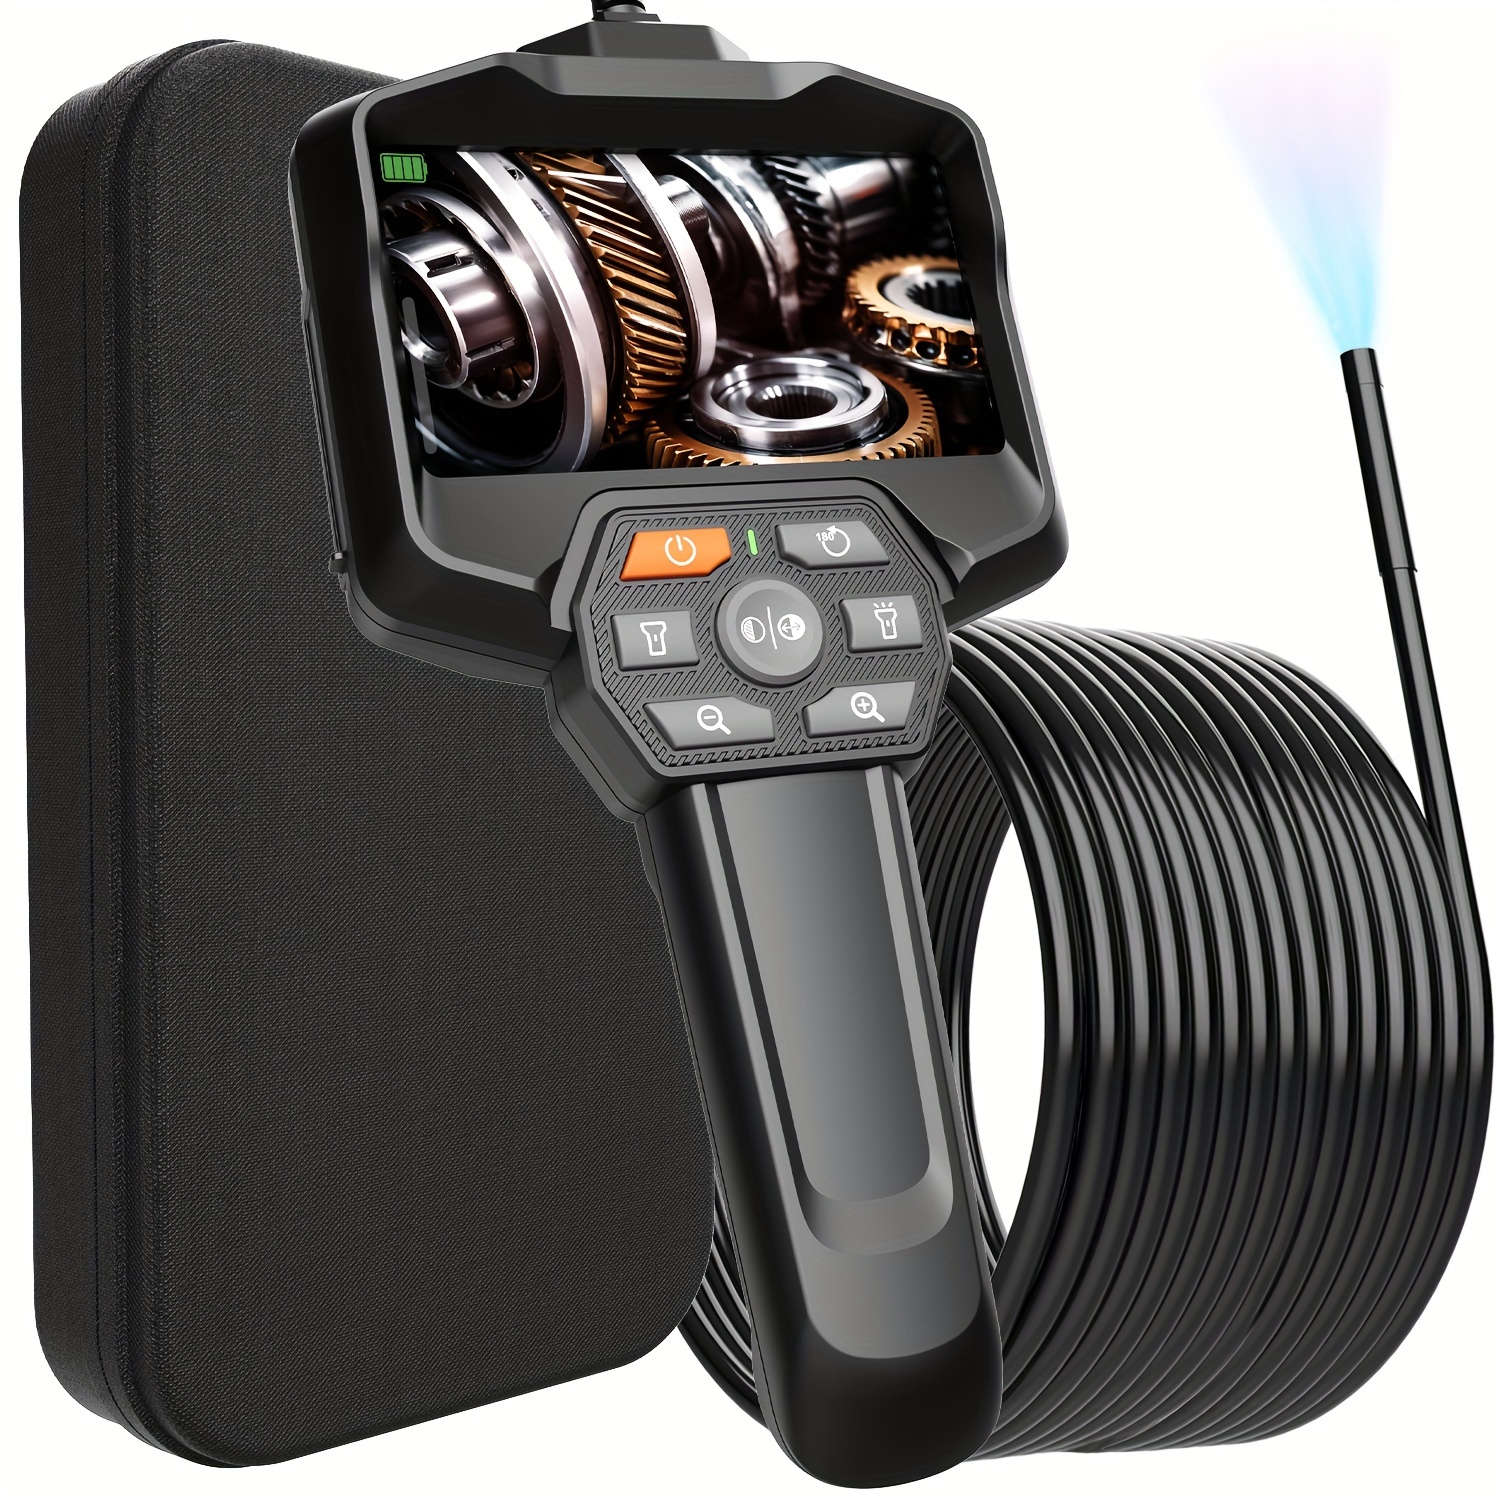 Endoscope Industriel,1080P HD Caméra Endoscopique,Endoscope d'écran IPS 4,5  Pouces avec 6 LED